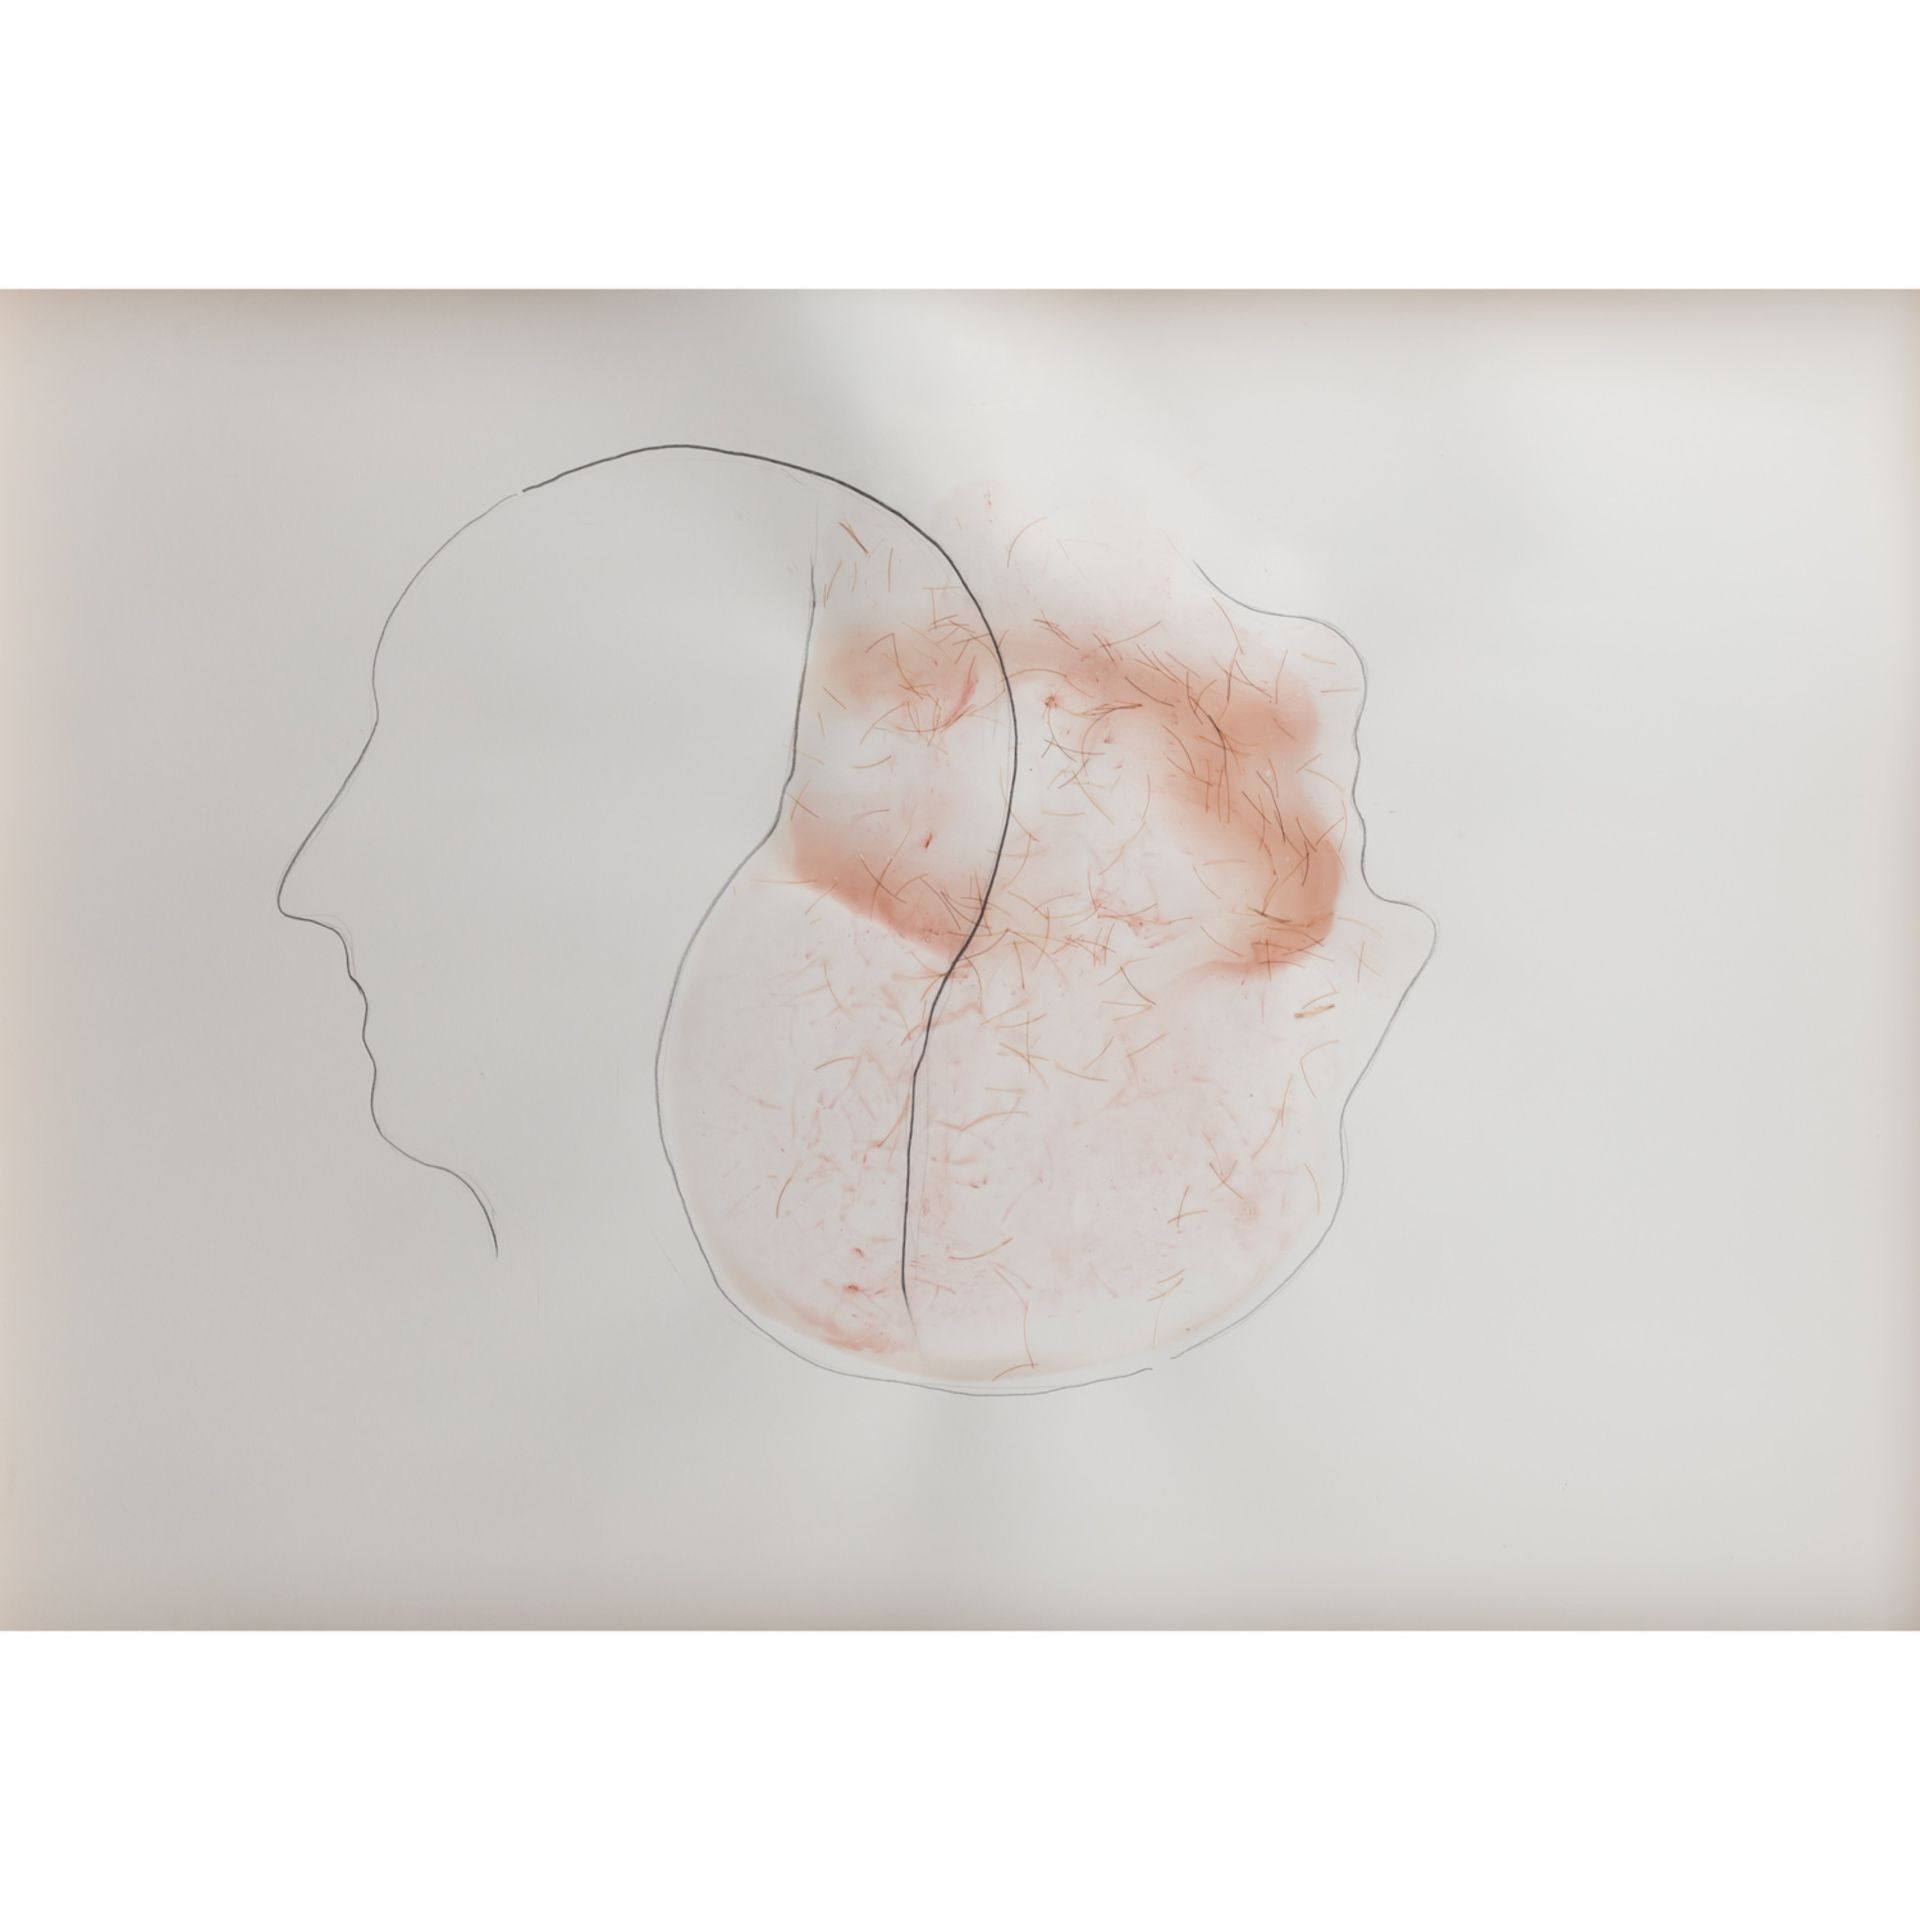 HABERPOINTNER, ALFRED (geb. 1966, österreichischer Künstler), "Zwei Köpfe",im Profil ineinander